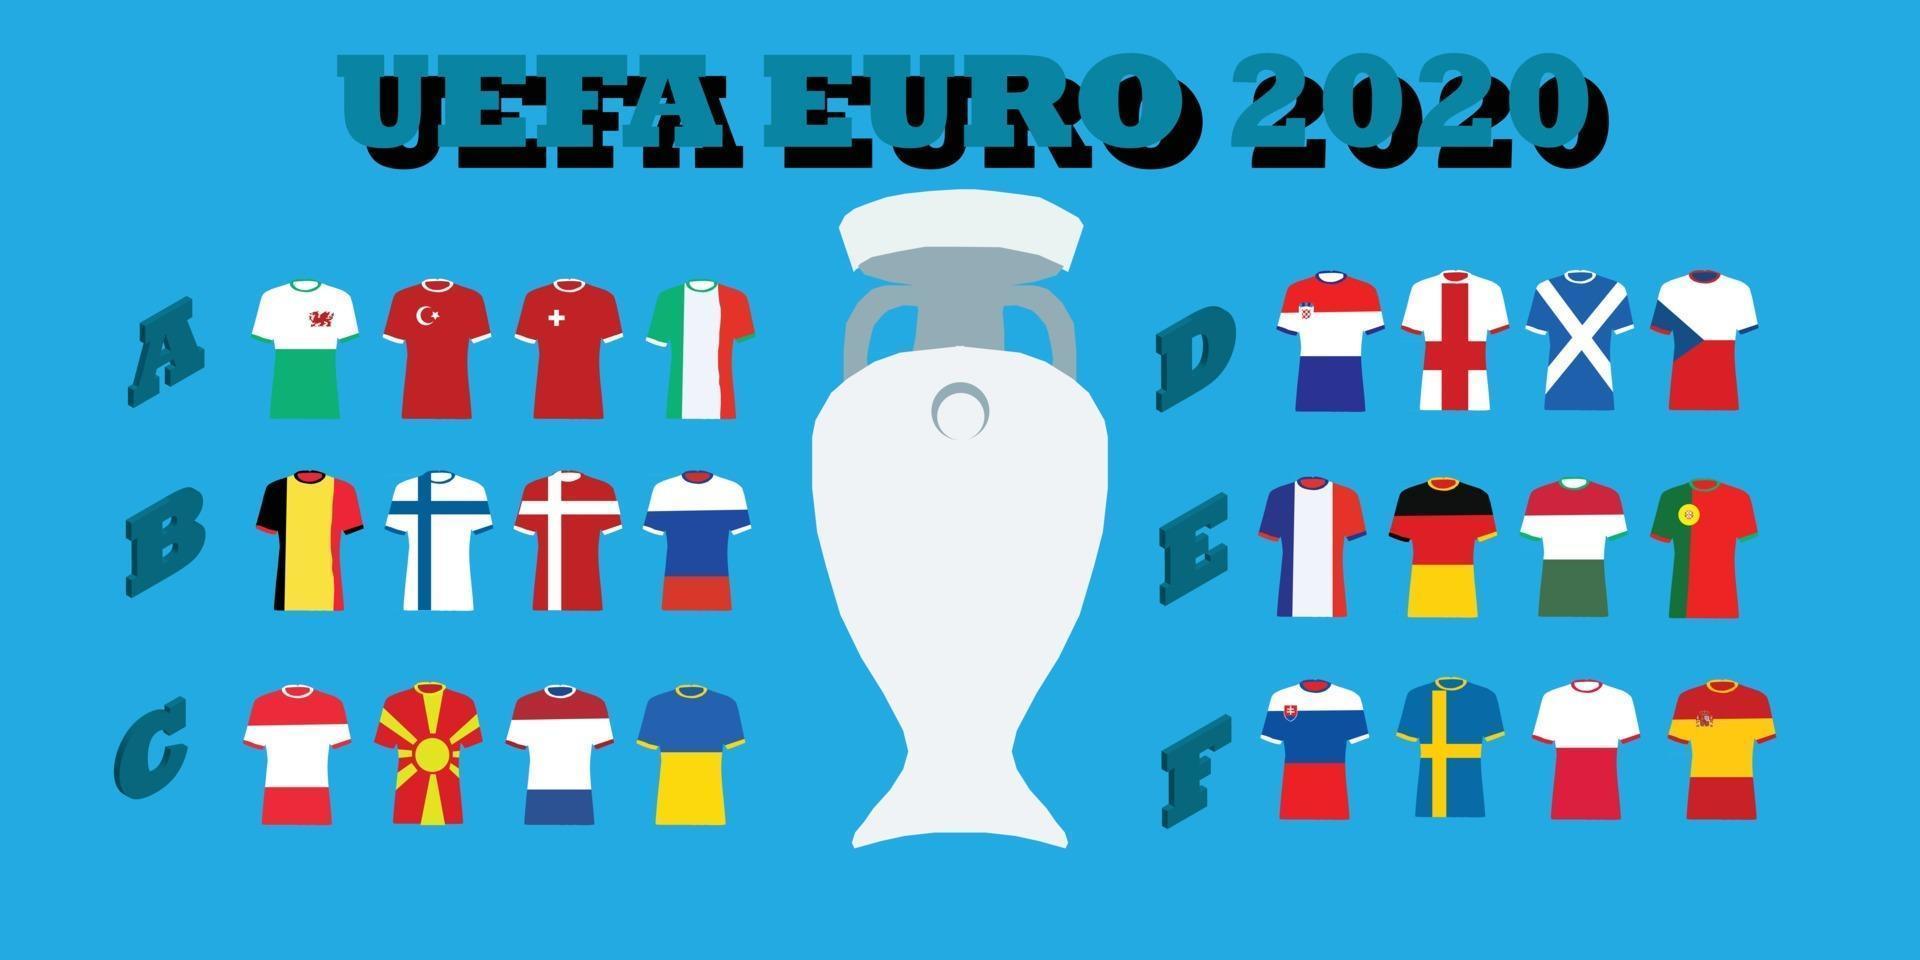 torneo uefa euro 2020 vector